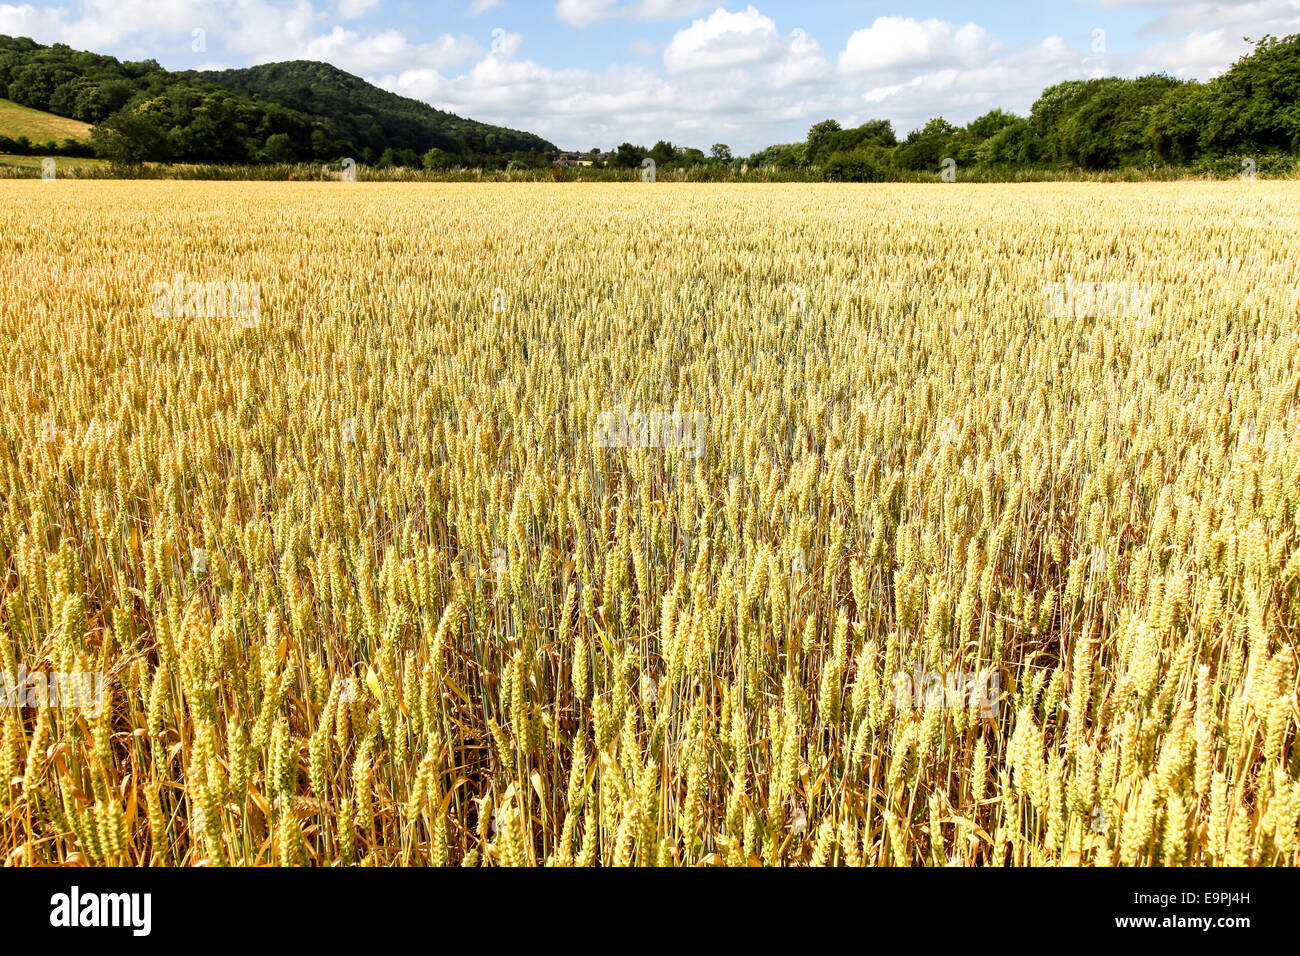 Campo de cebada la cosecha del cereal en un día de verano con el cielo azul y las nubes blancas Herefordshire Inglaterra Foto de stock